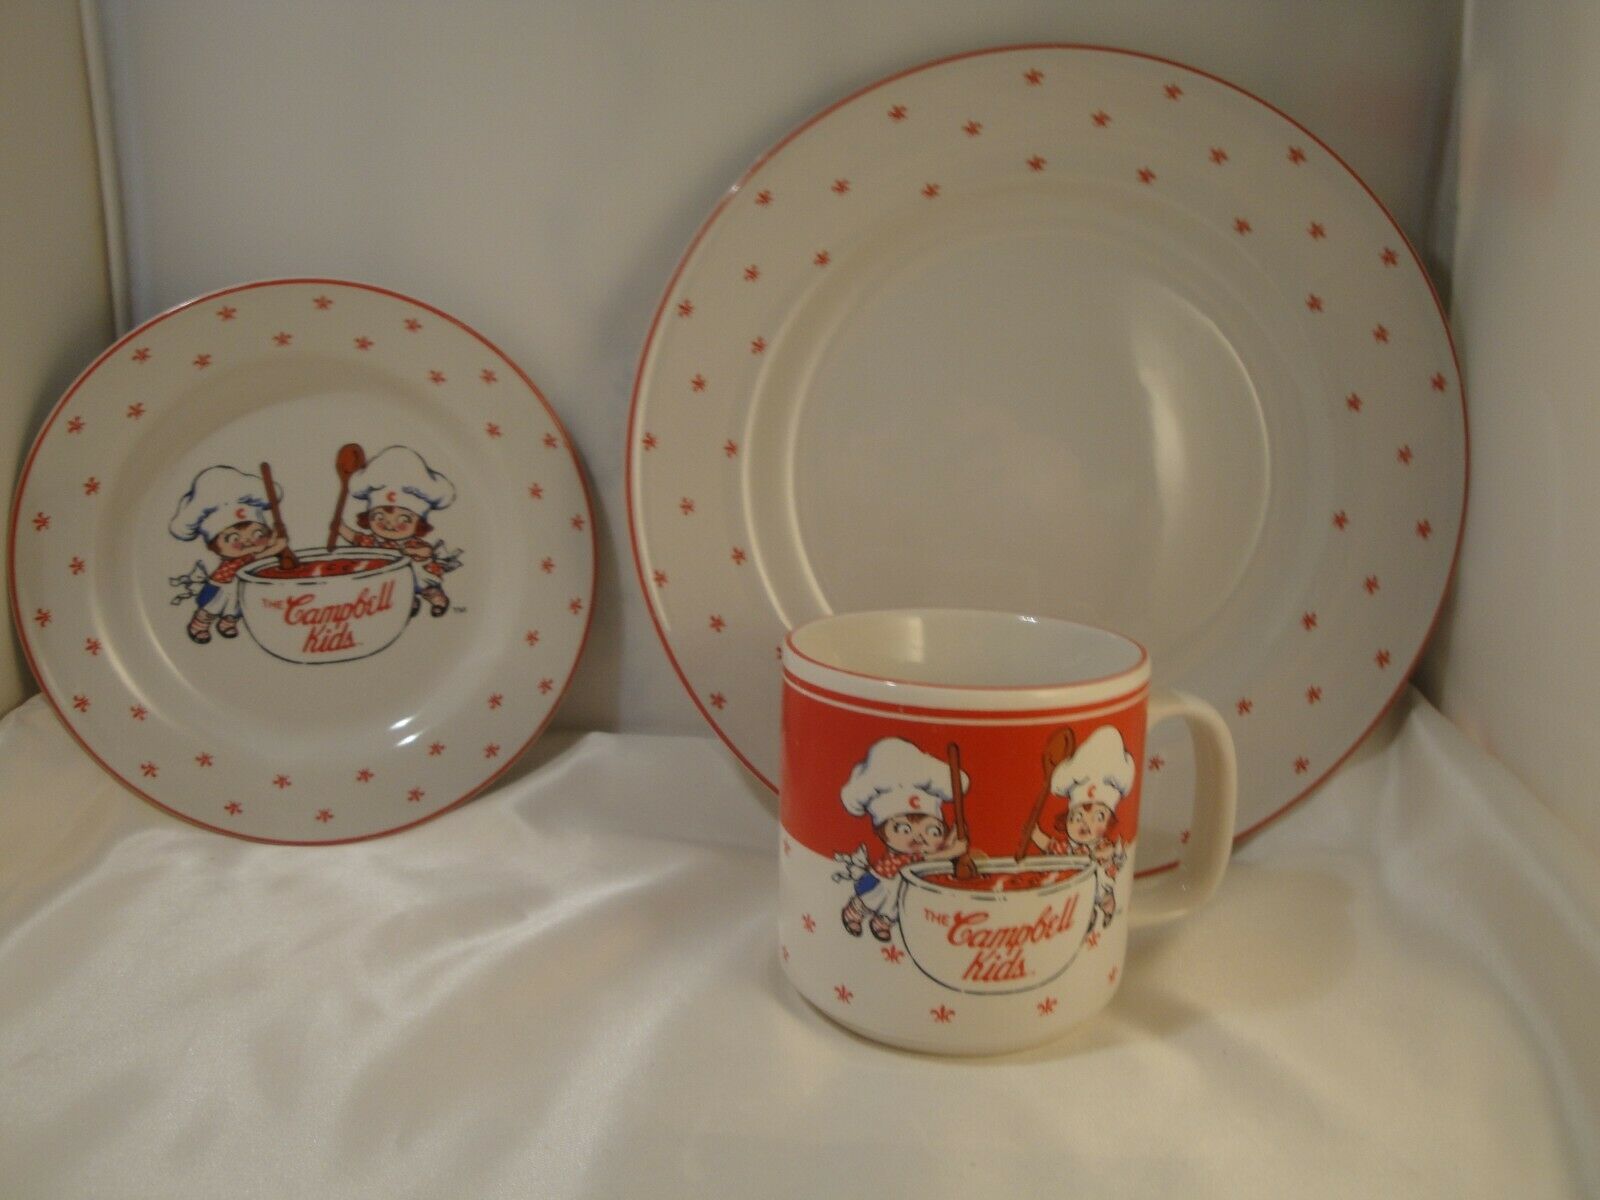 Vintage Campbell"s Kids Mug Saucer & Plate